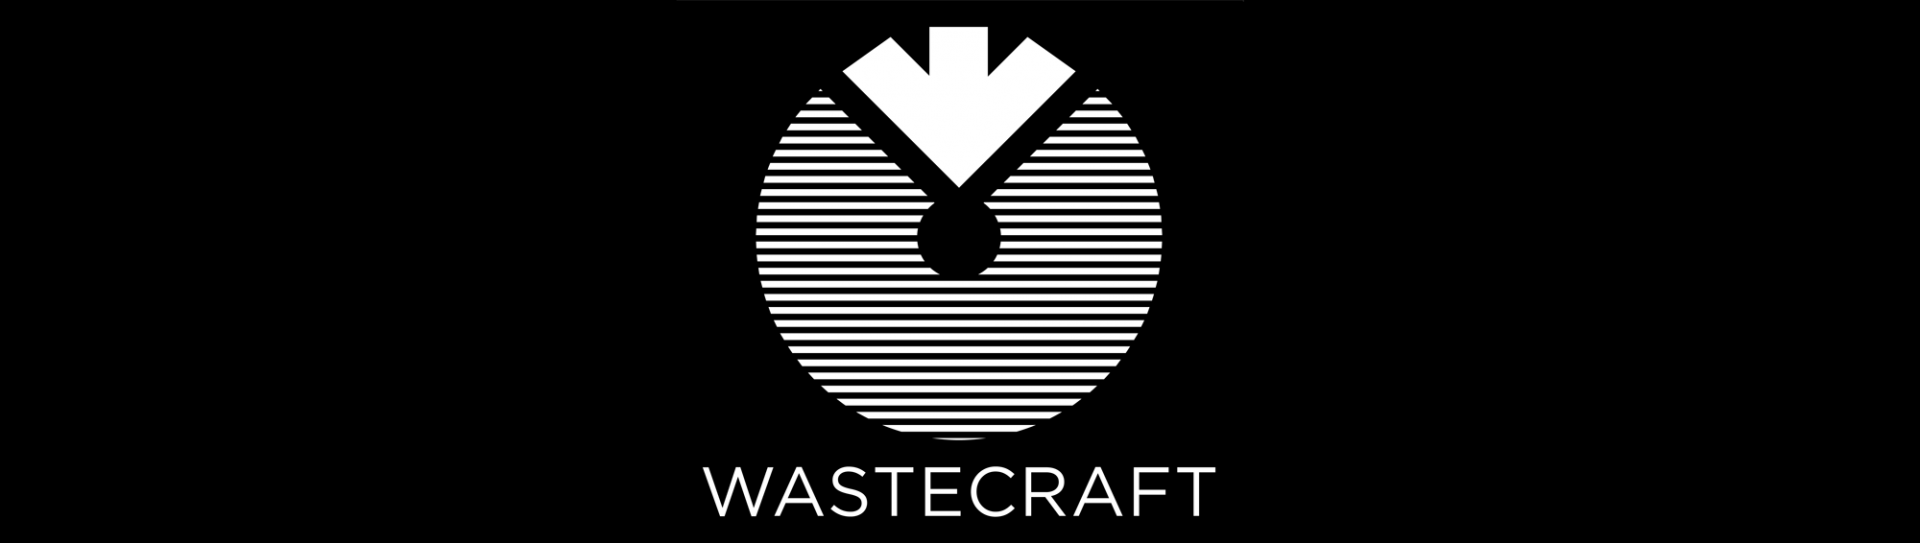 WASTECRAFT logo